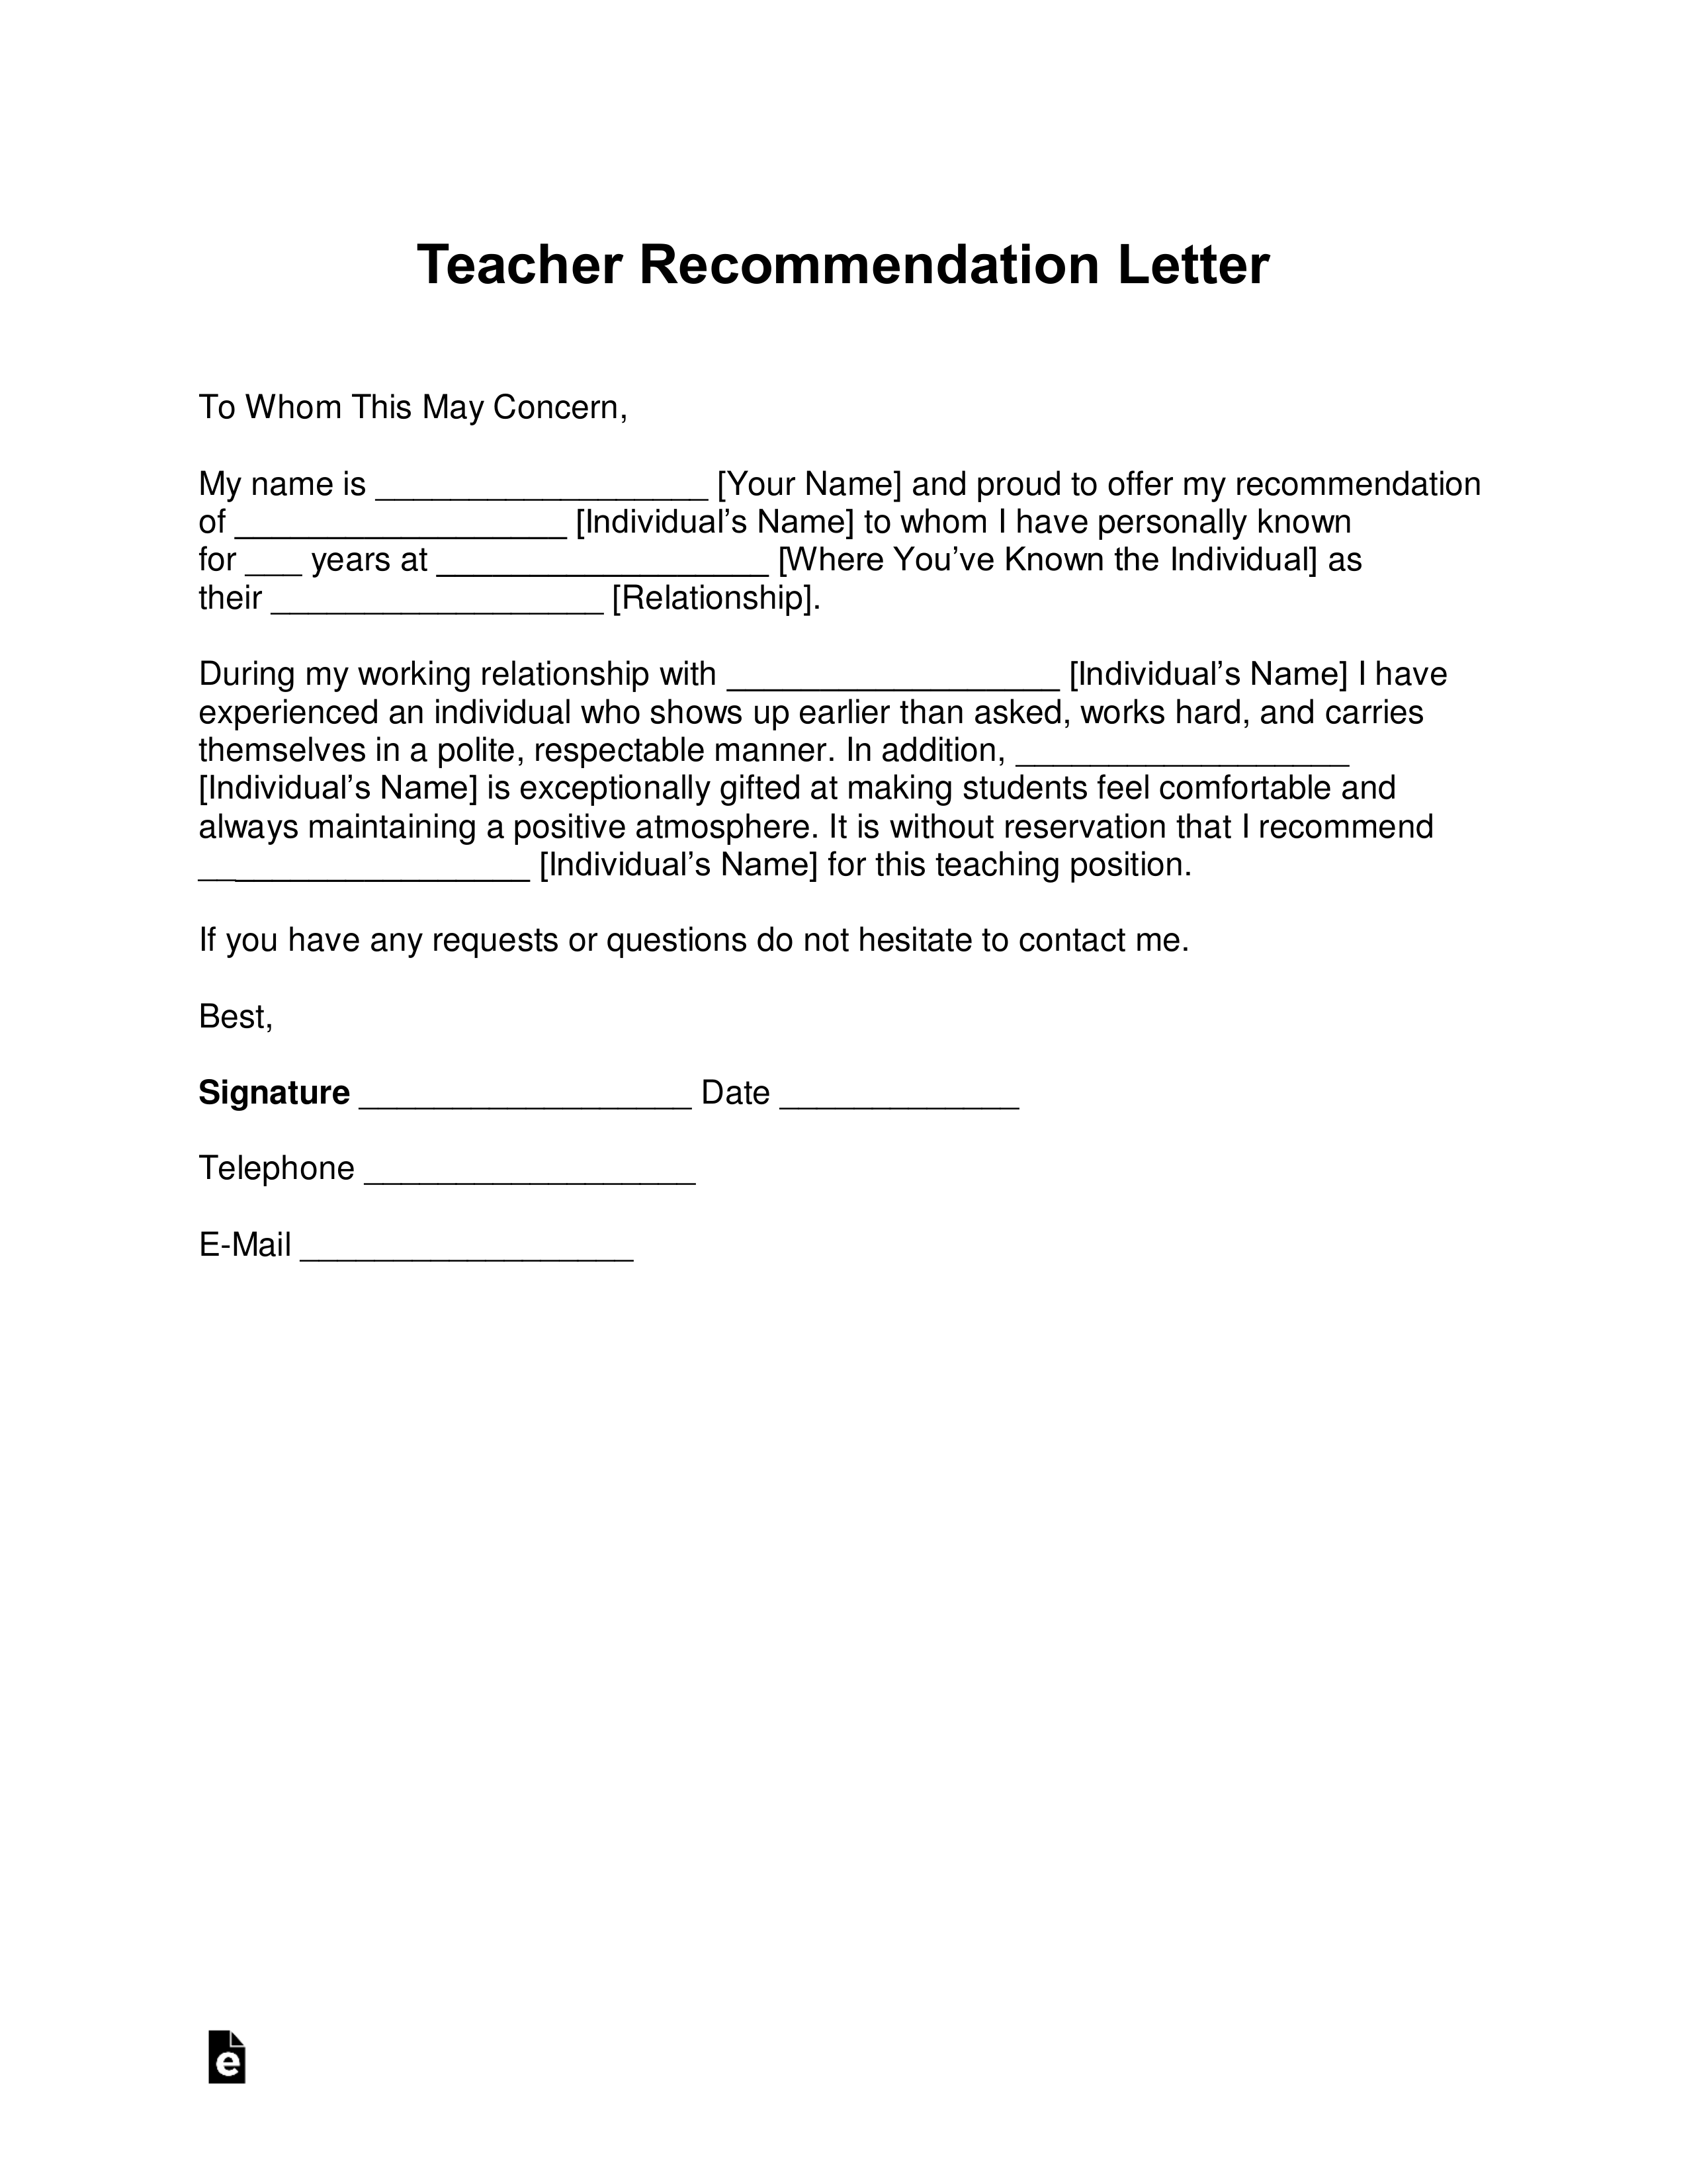 Elementary Teacher Resignation Letter from eforms.com